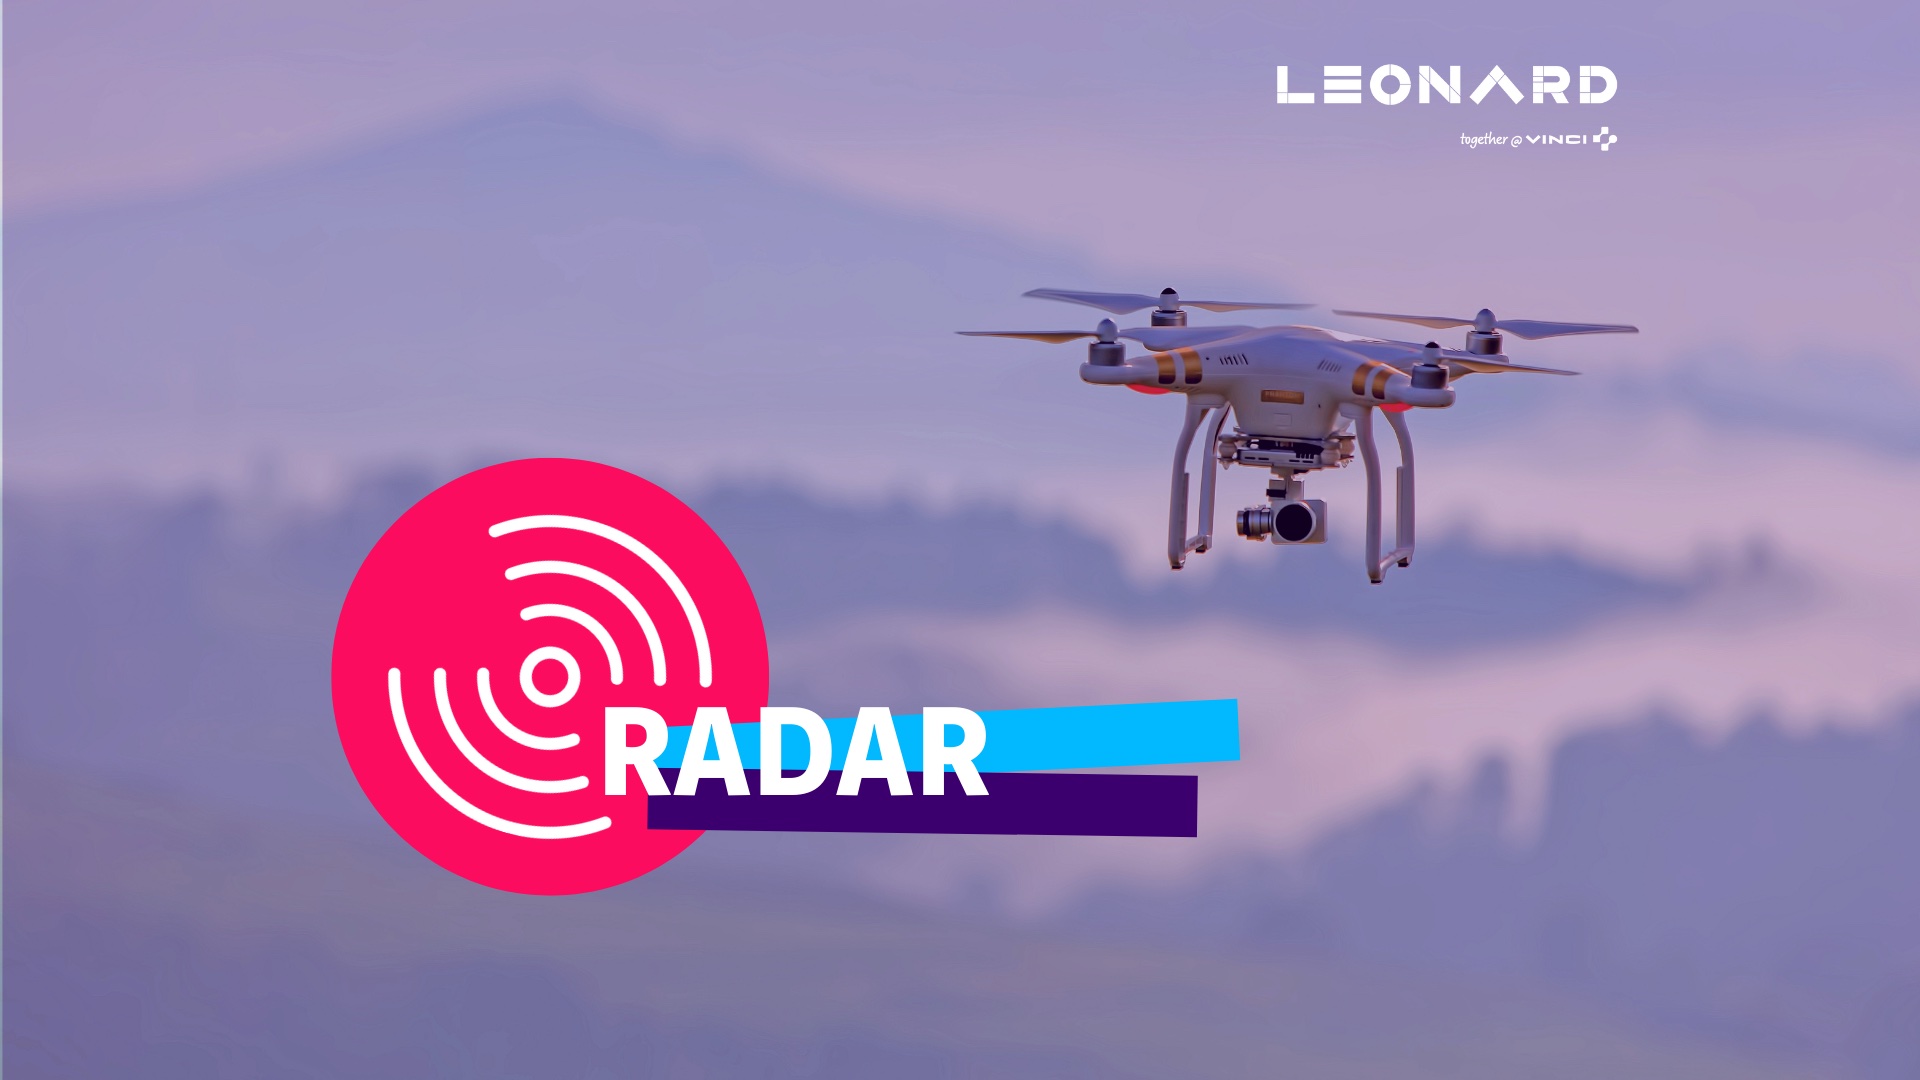 Radar – Notre sélection de business innovants #64